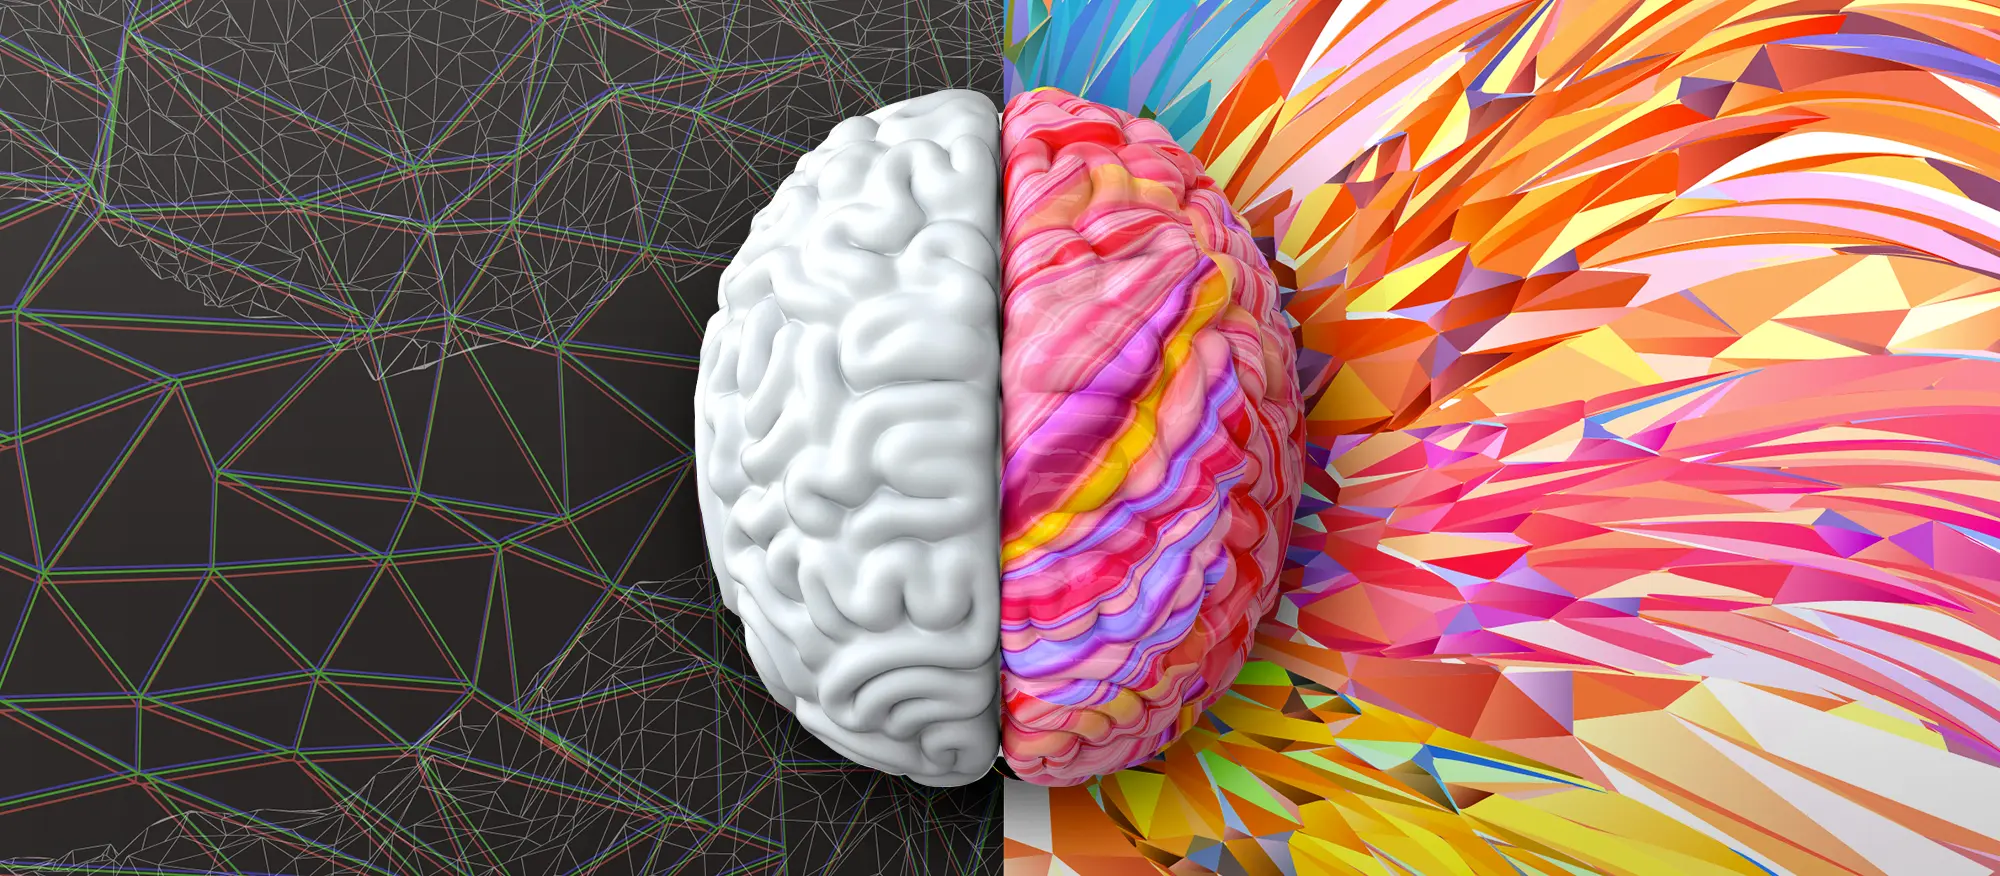 Ilustração do cérebro humano branco e multicolorido, tipos de criatividade